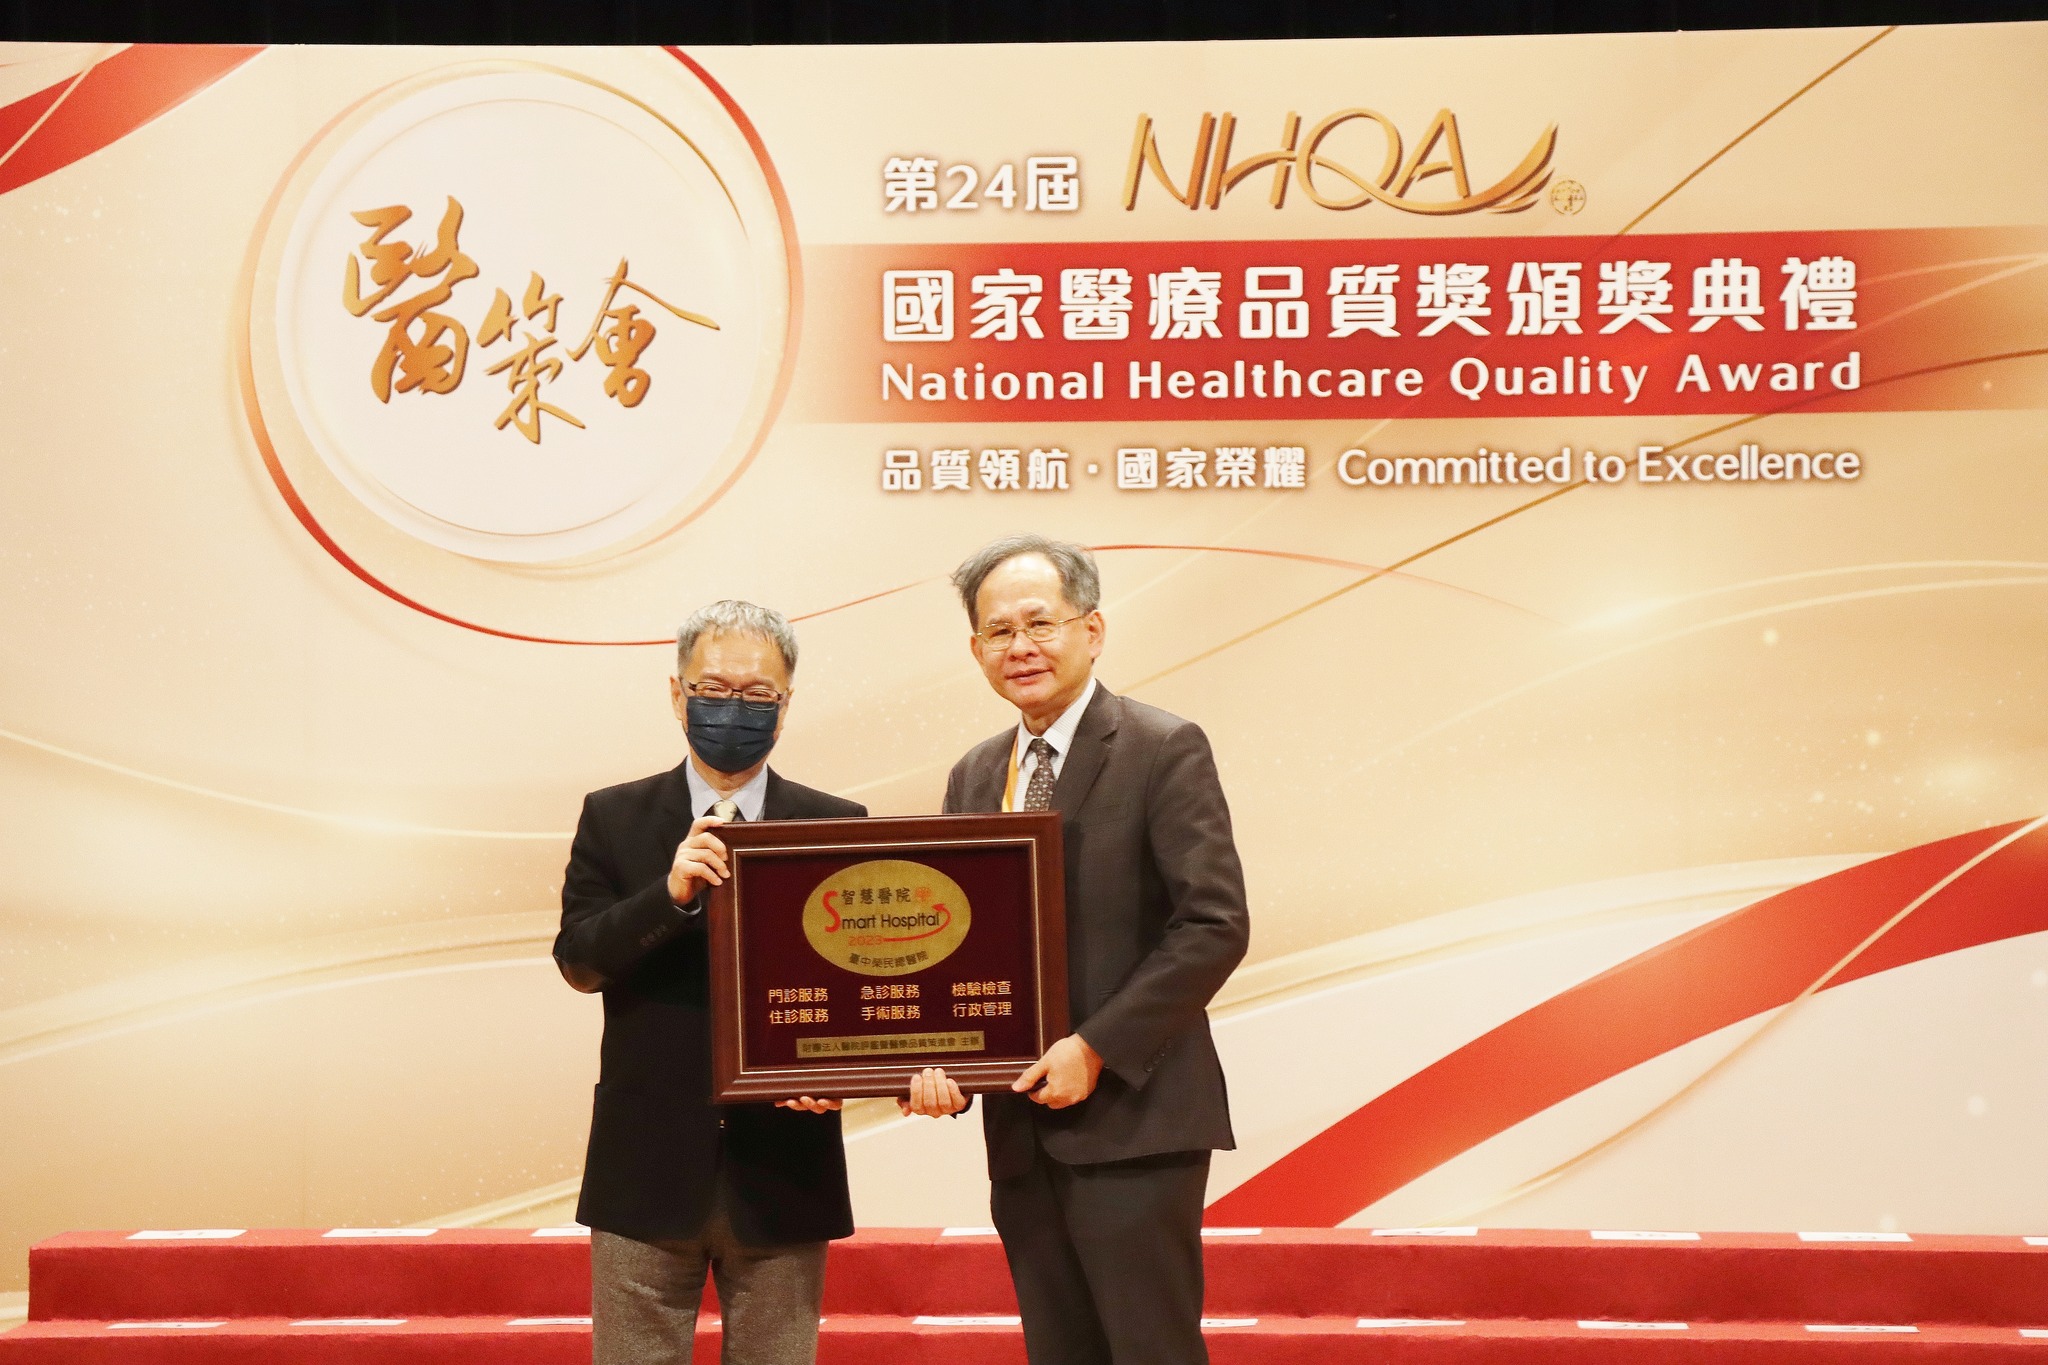 獲頒「智慧醫院全機構標章」，由陳適安院長代表領獎